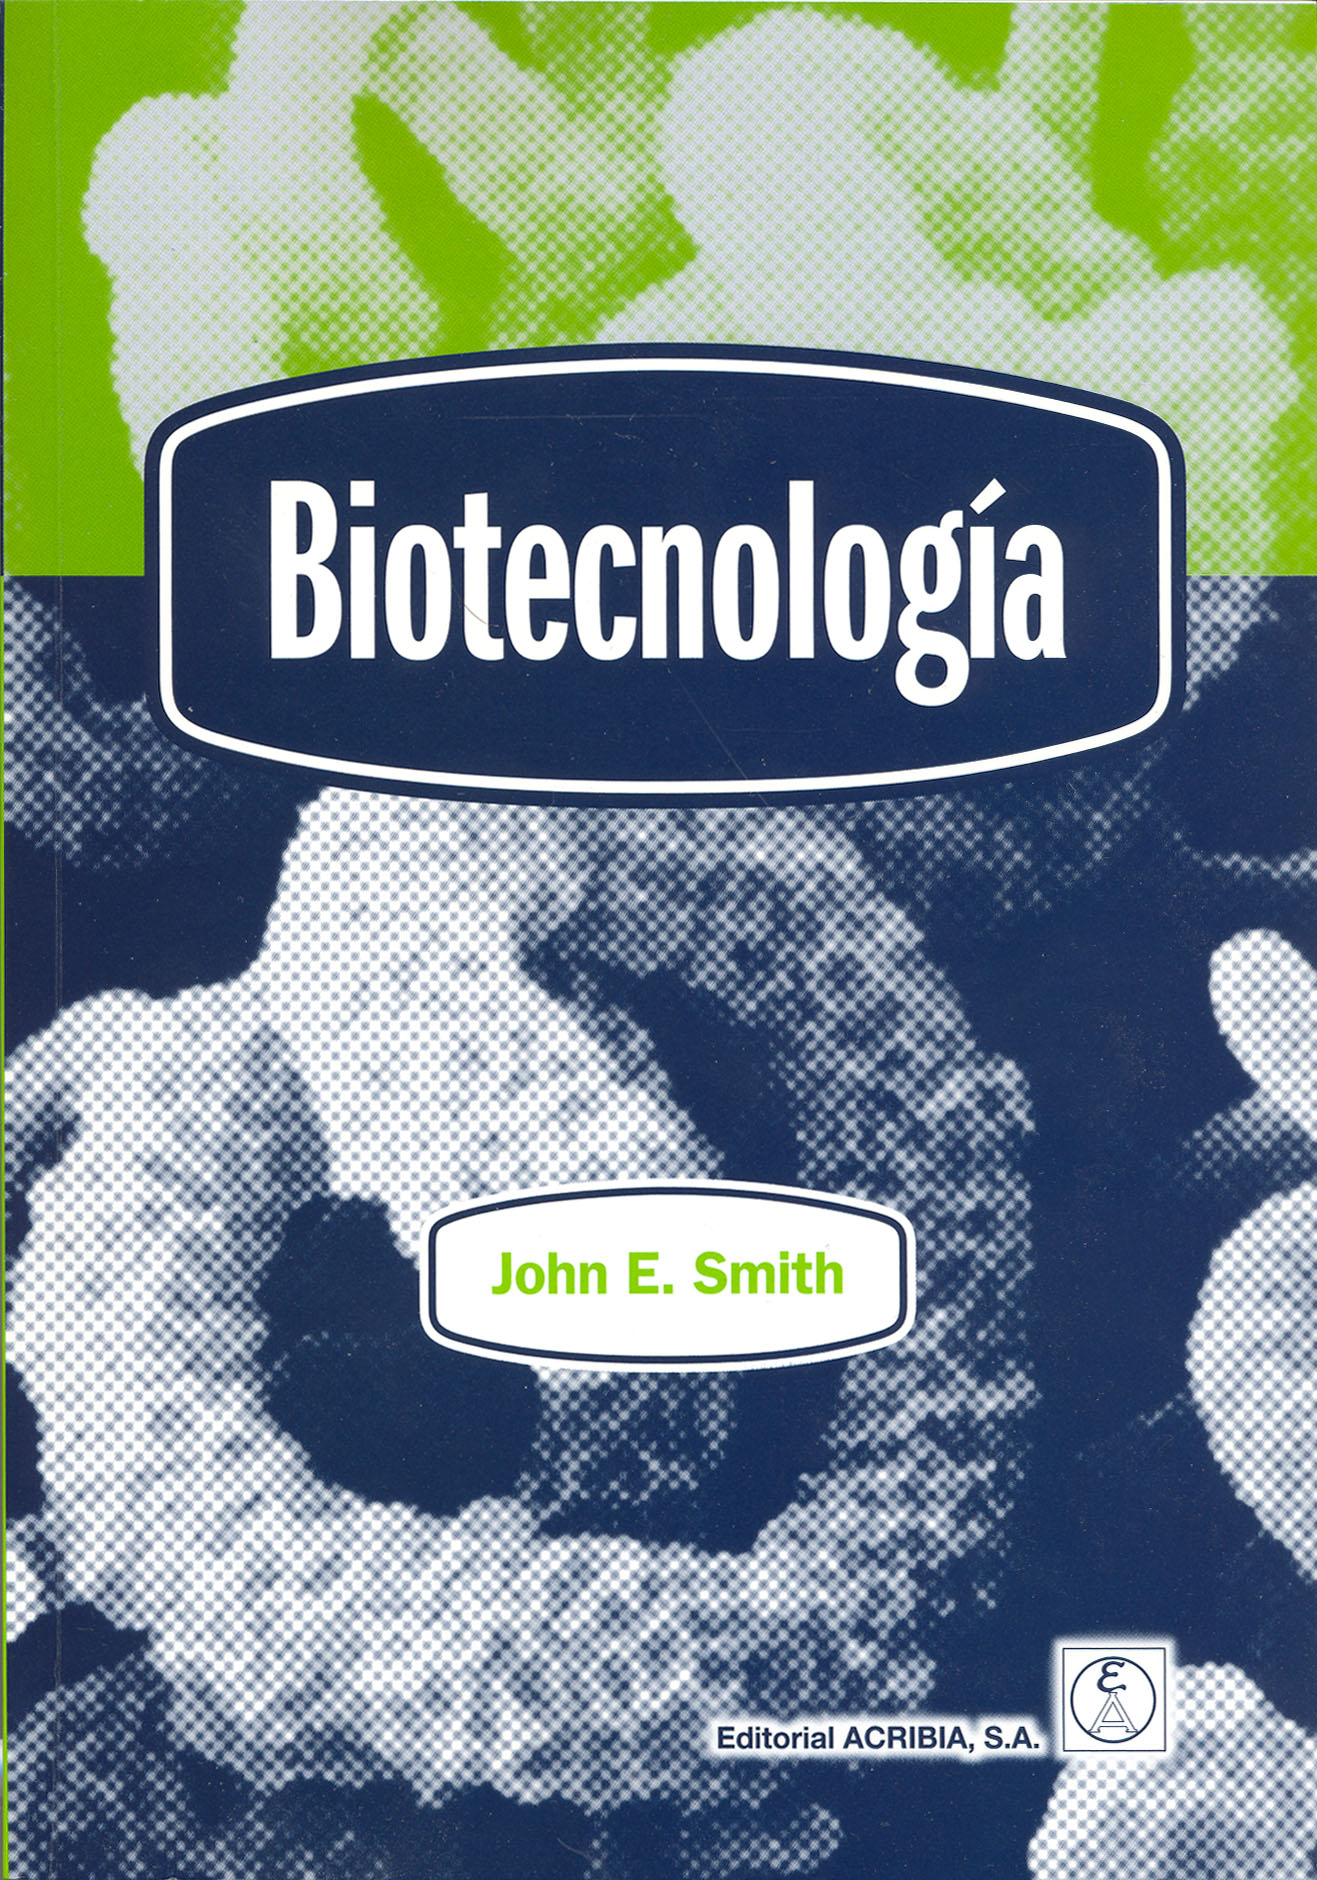 Biotecnología - Editorial Acribia, .